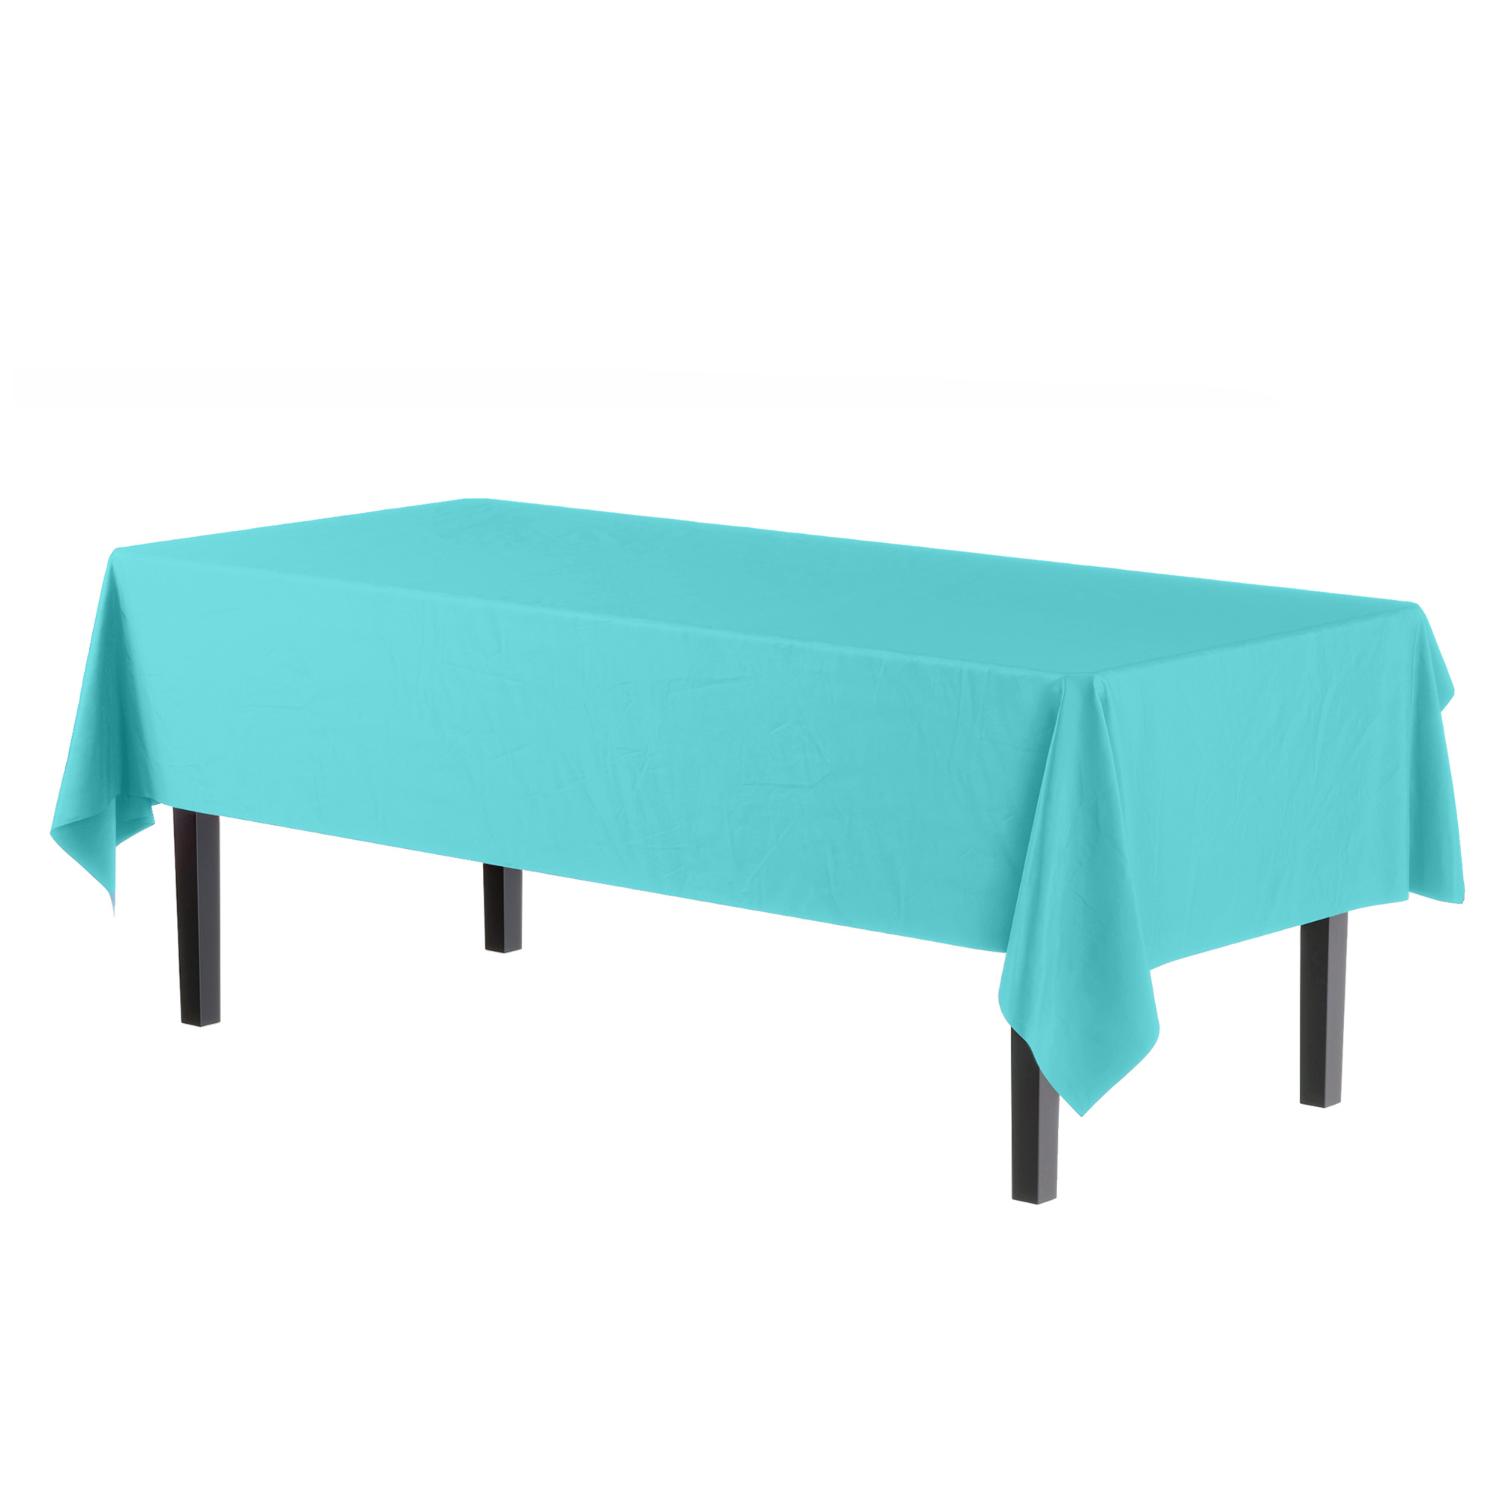 Premium Aqua Blue Table Cover - 96 Ct.